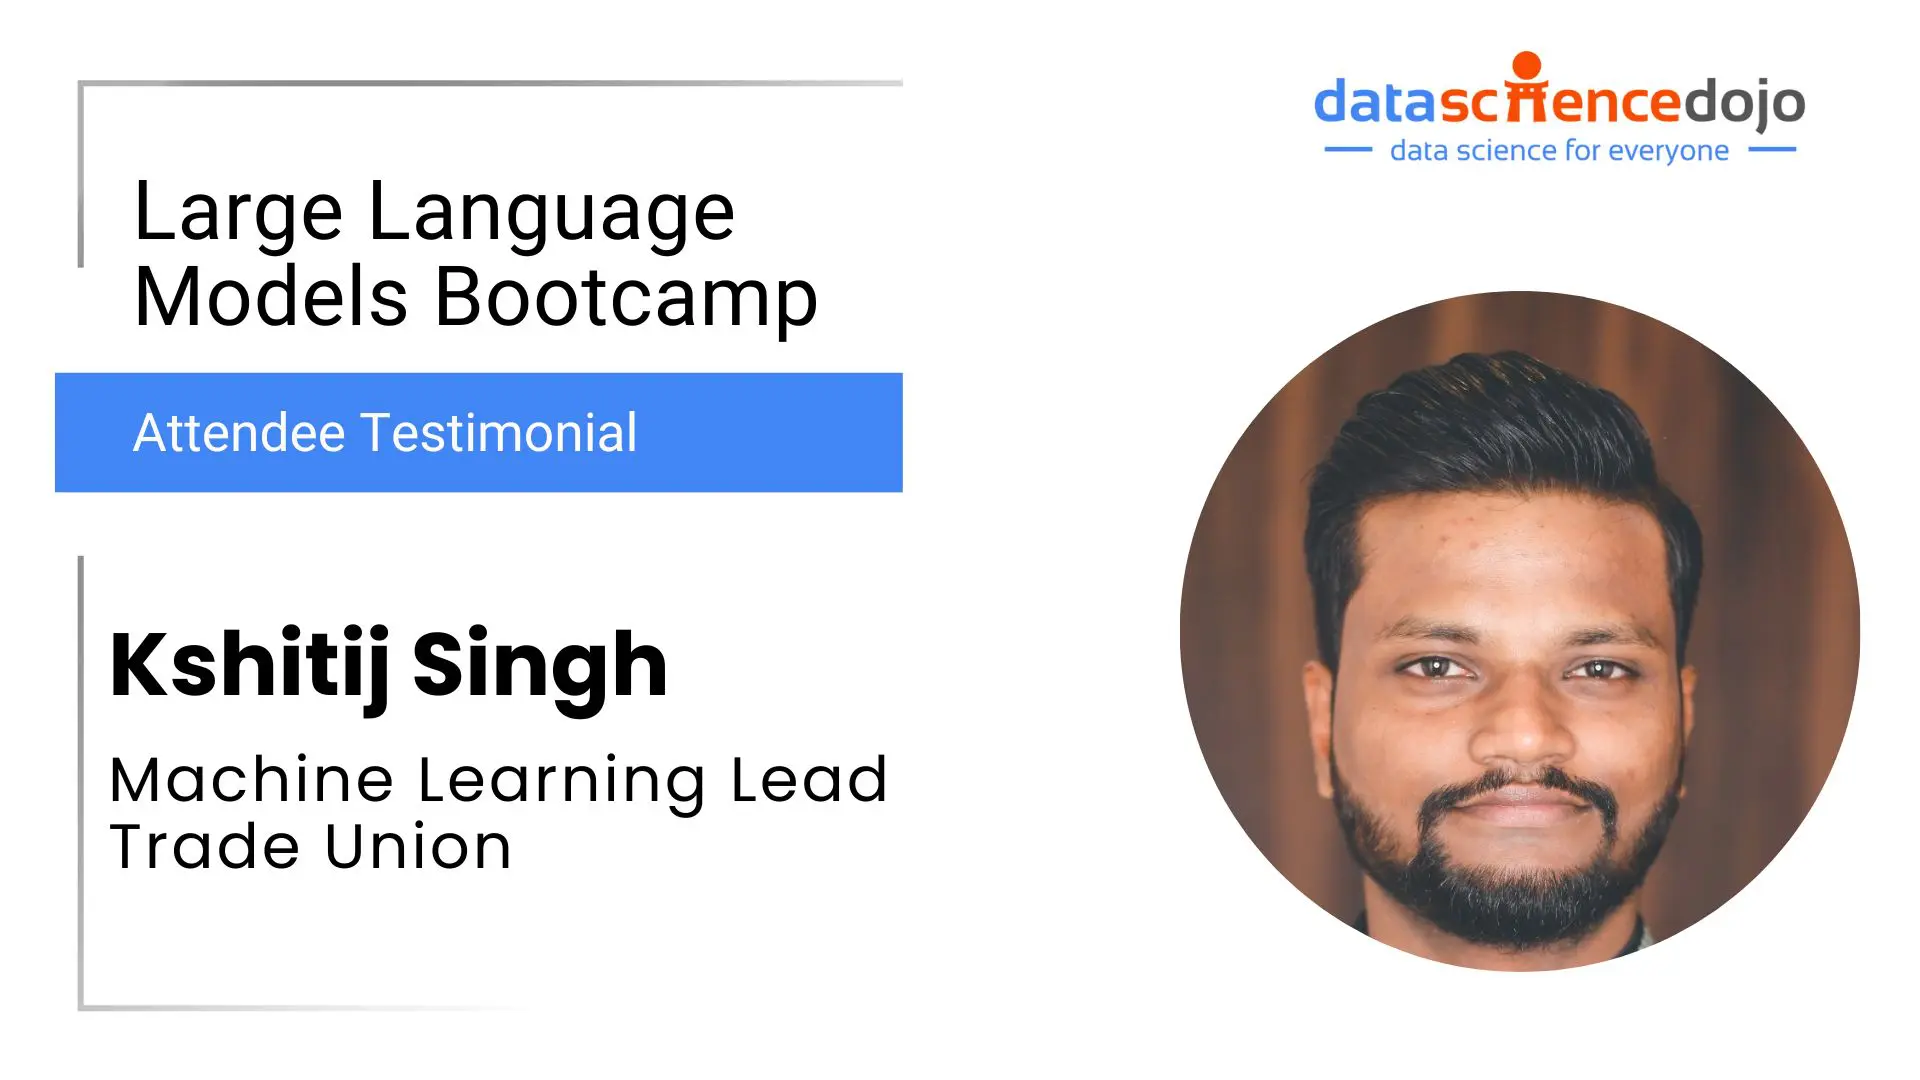 Large Language Models Bootcamp - Kshitij Singh